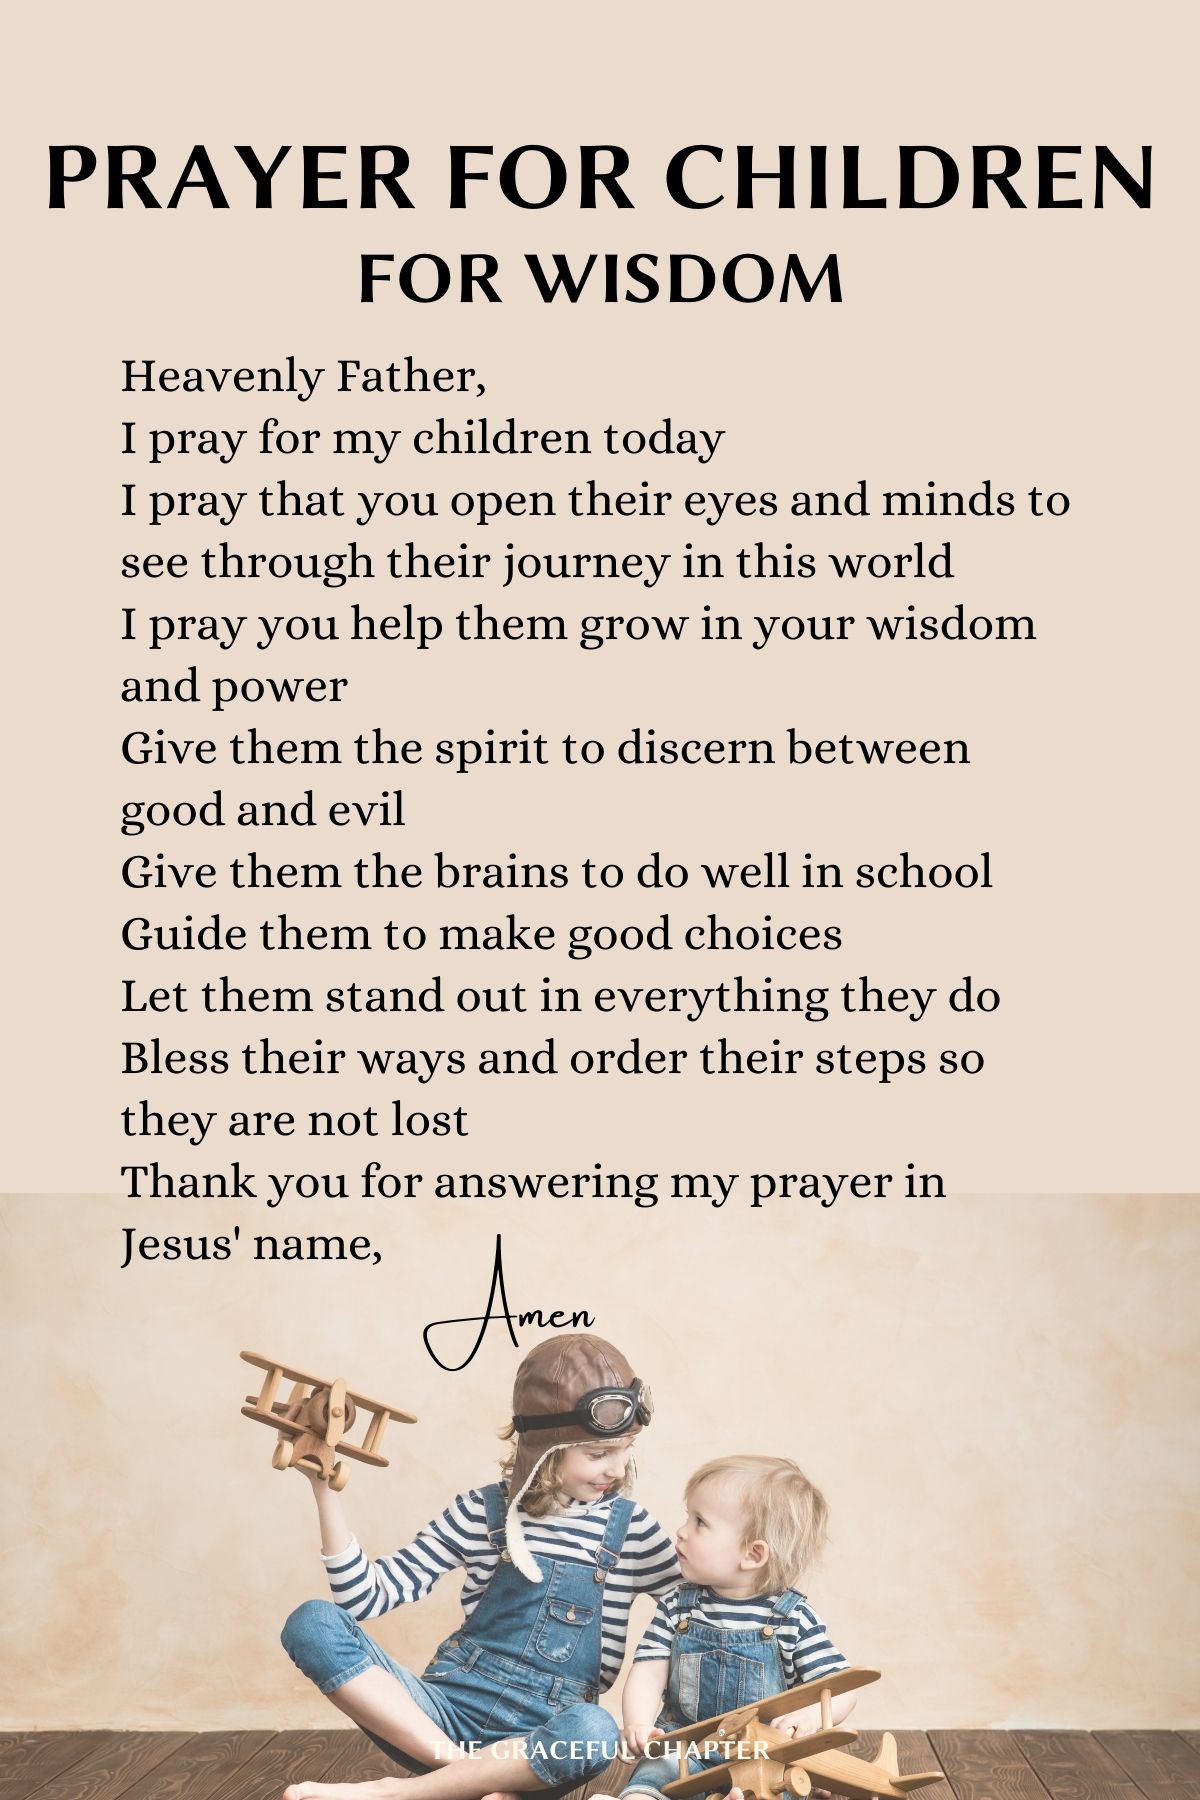 Prayer for your children - for wisdom